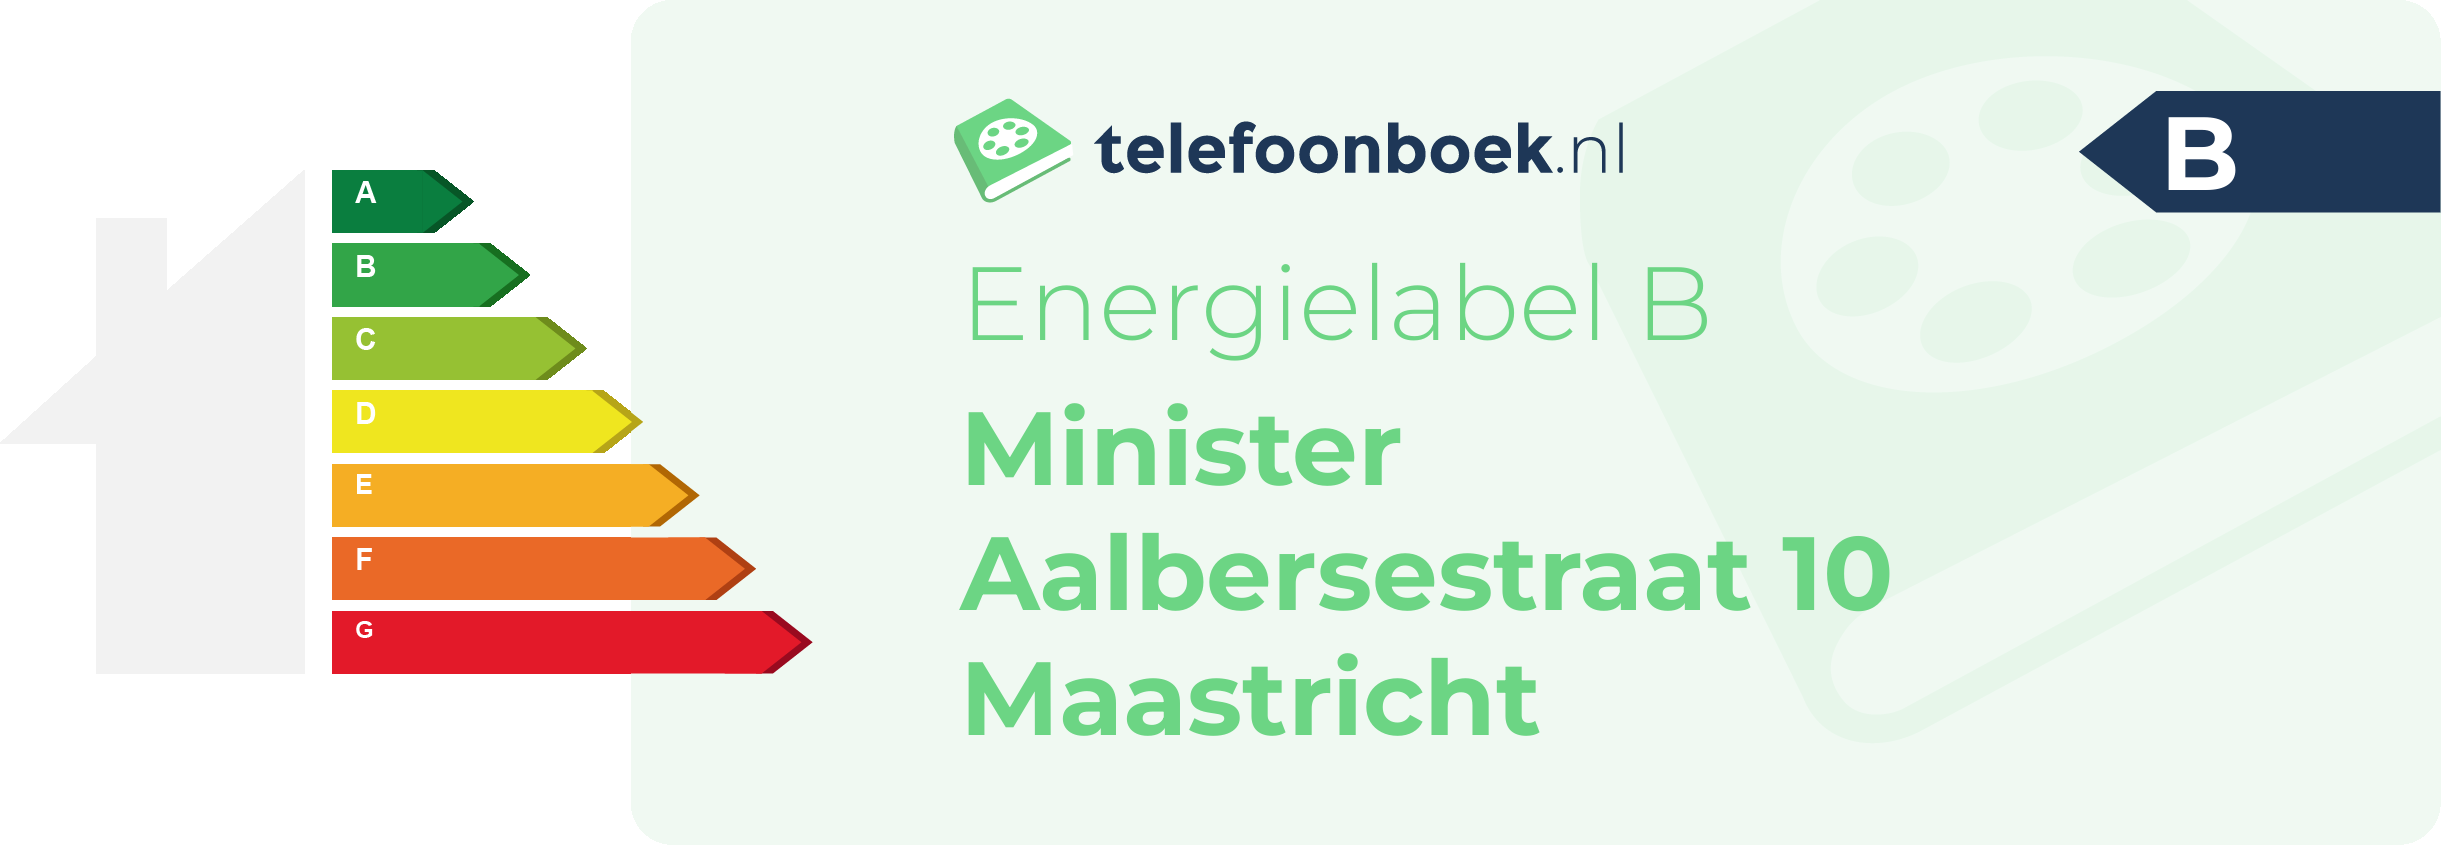 Energielabel Minister Aalbersestraat 10 Maastricht